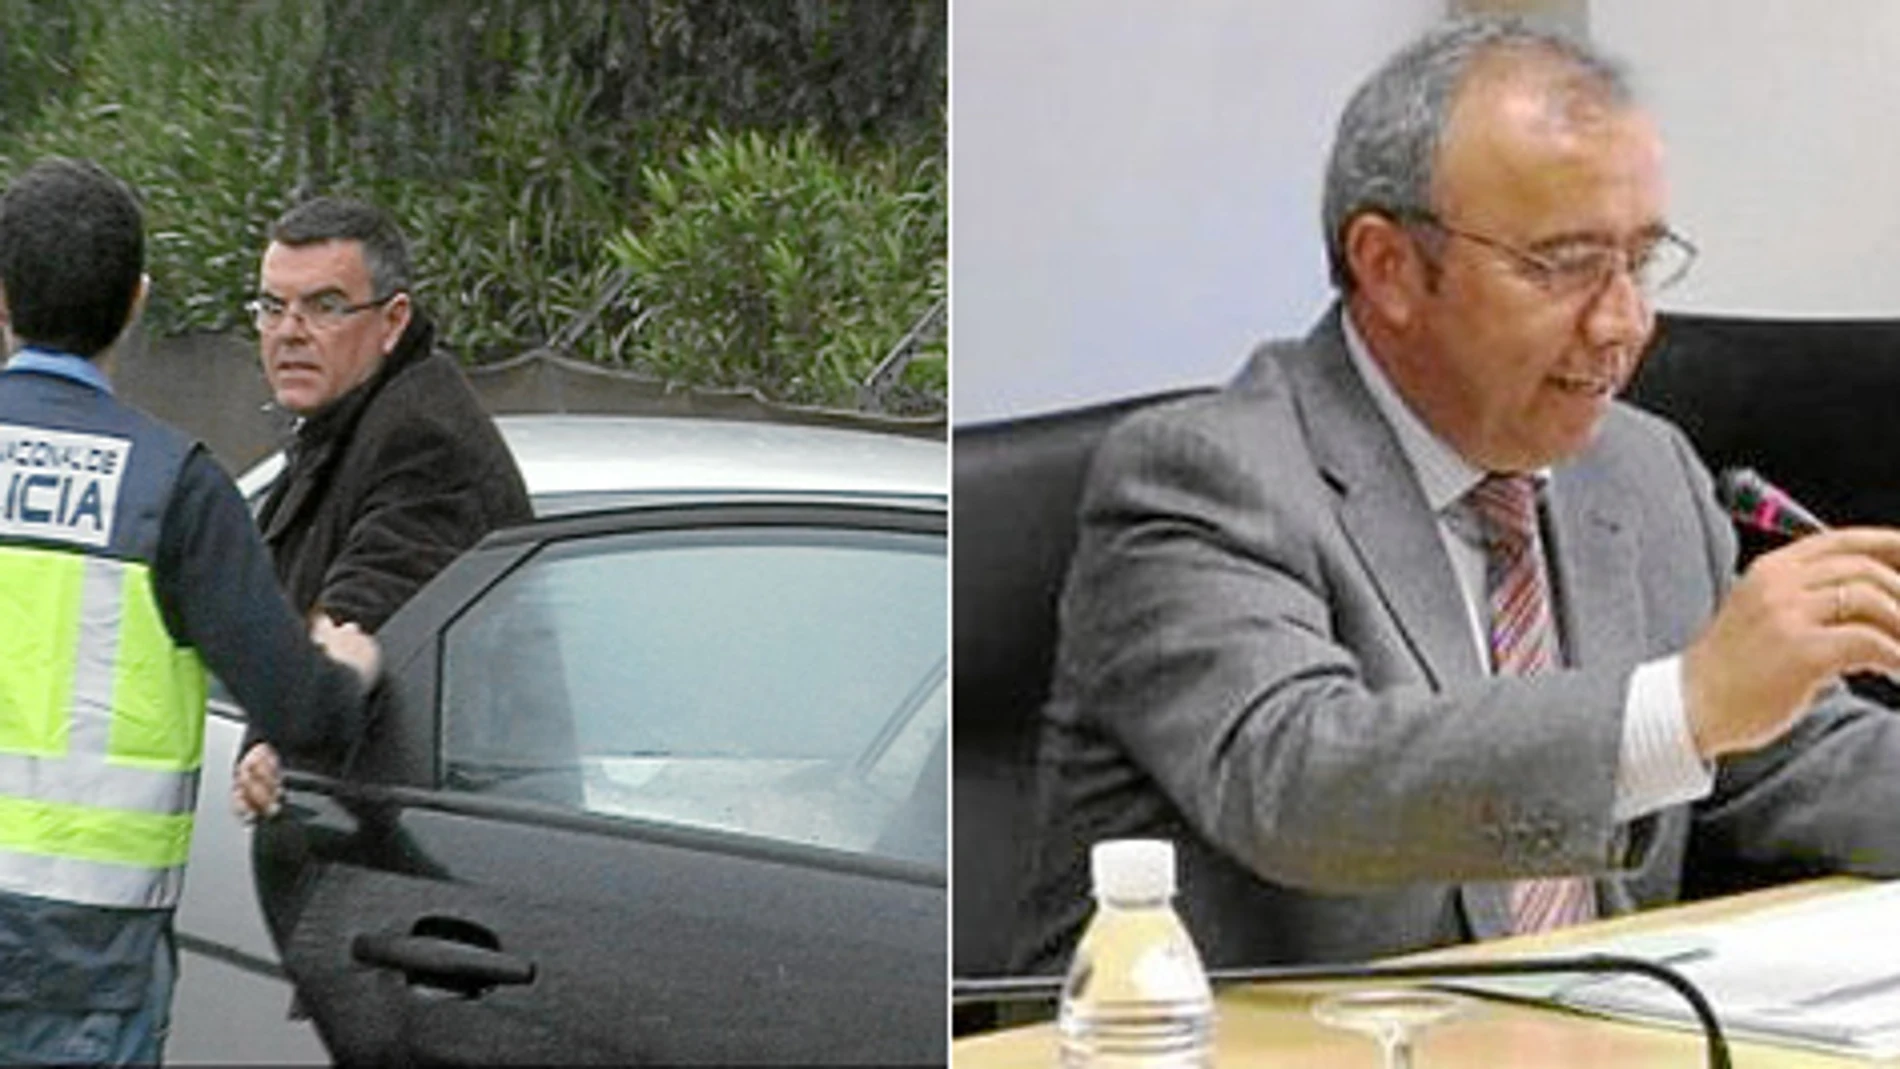 El ex director de Limusa, Francisco Gil Eguino, y el ex diputado del Partido Socialista en la Asamblea, Bartolomé Soler, condenados a entrar en la cárcel